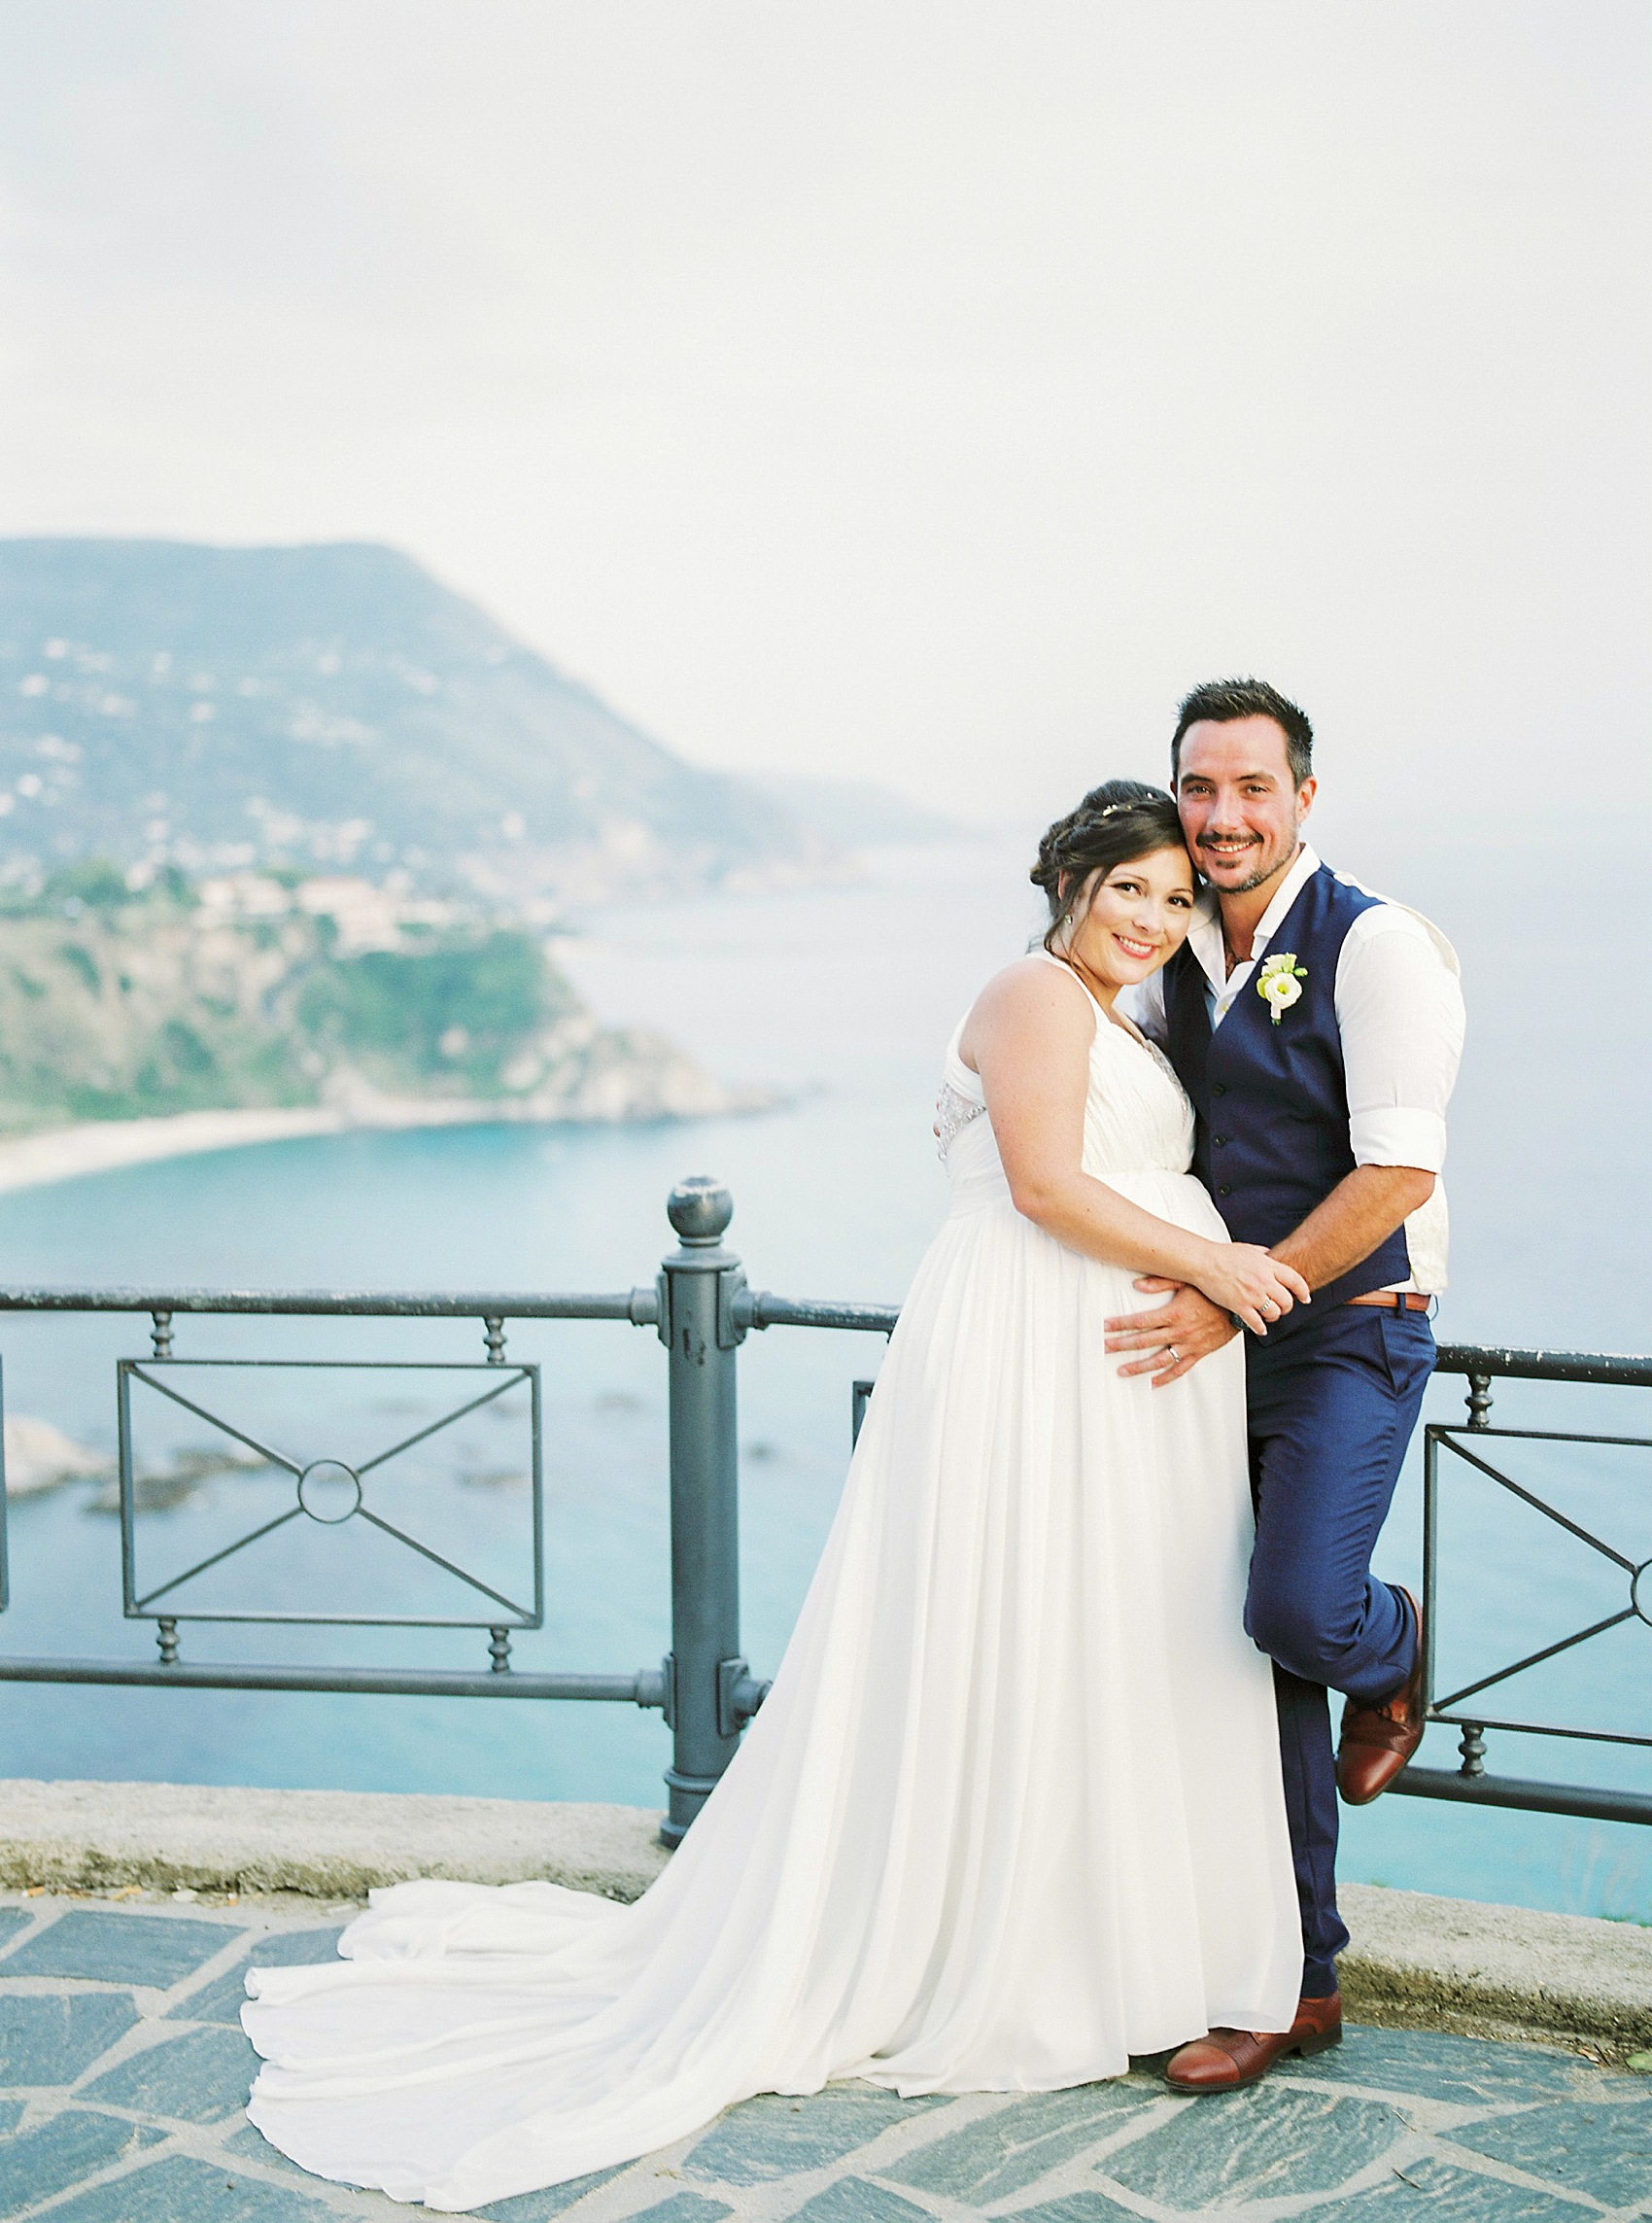 Pregnant bride Il Faro Wedding Italy 27